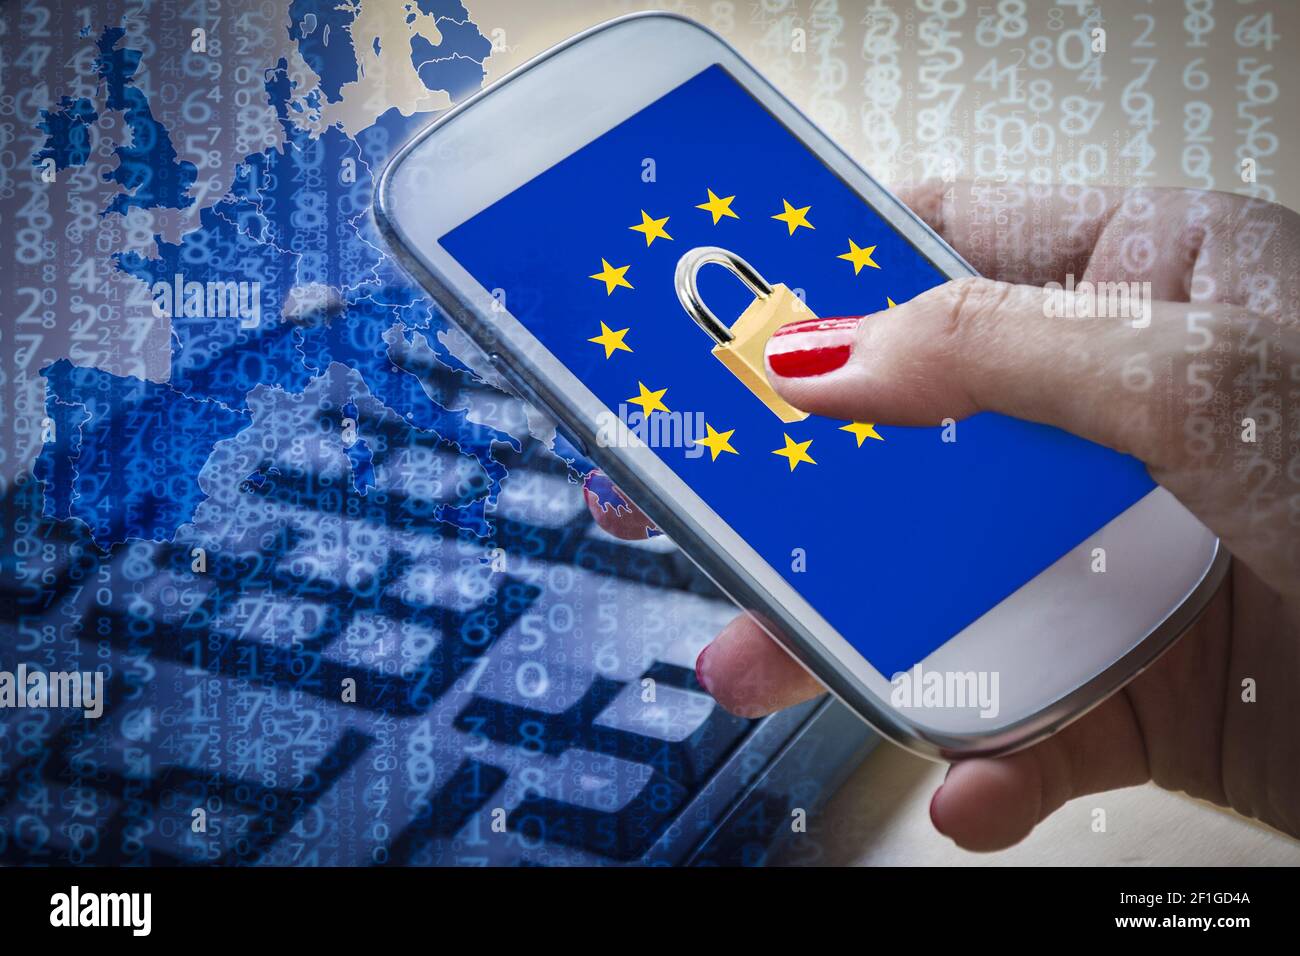 Candado y bandera de la UE en la pantalla del smartphone, metáfora GDPR Foto de stock